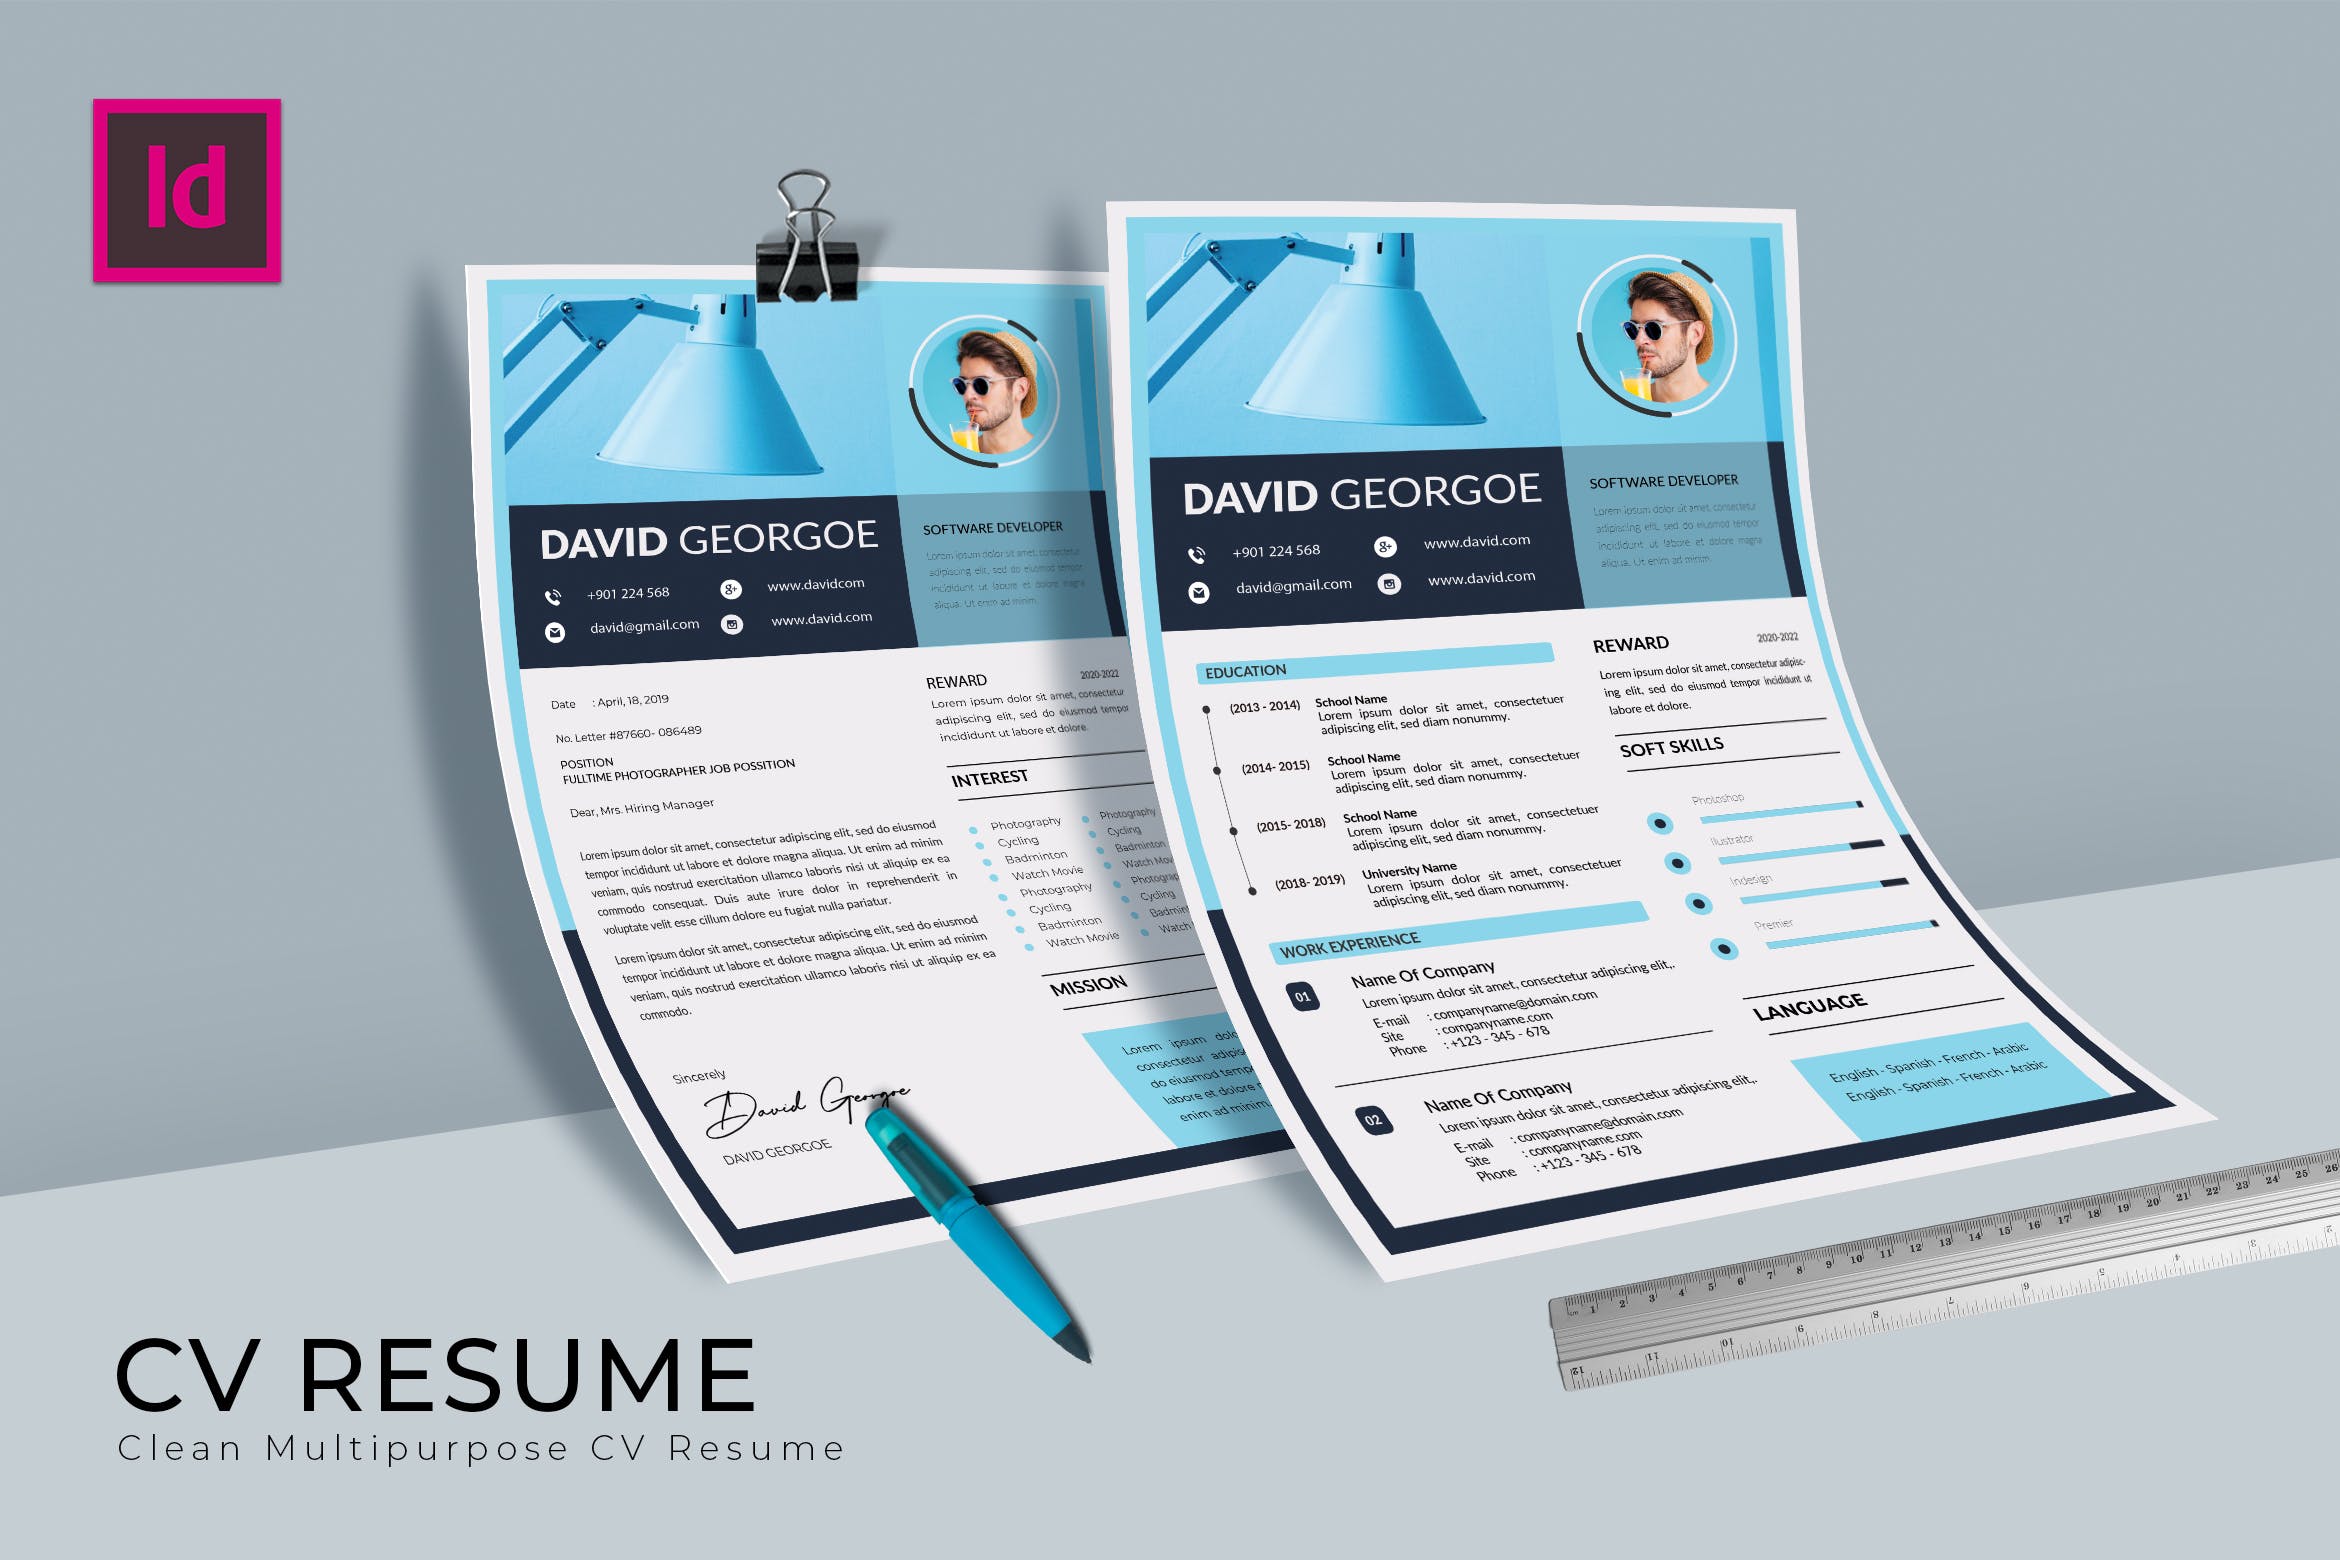 软件开发工程师介绍信&蚂蚁素材精选简历模板 Softy Blue CV Resume Template插图